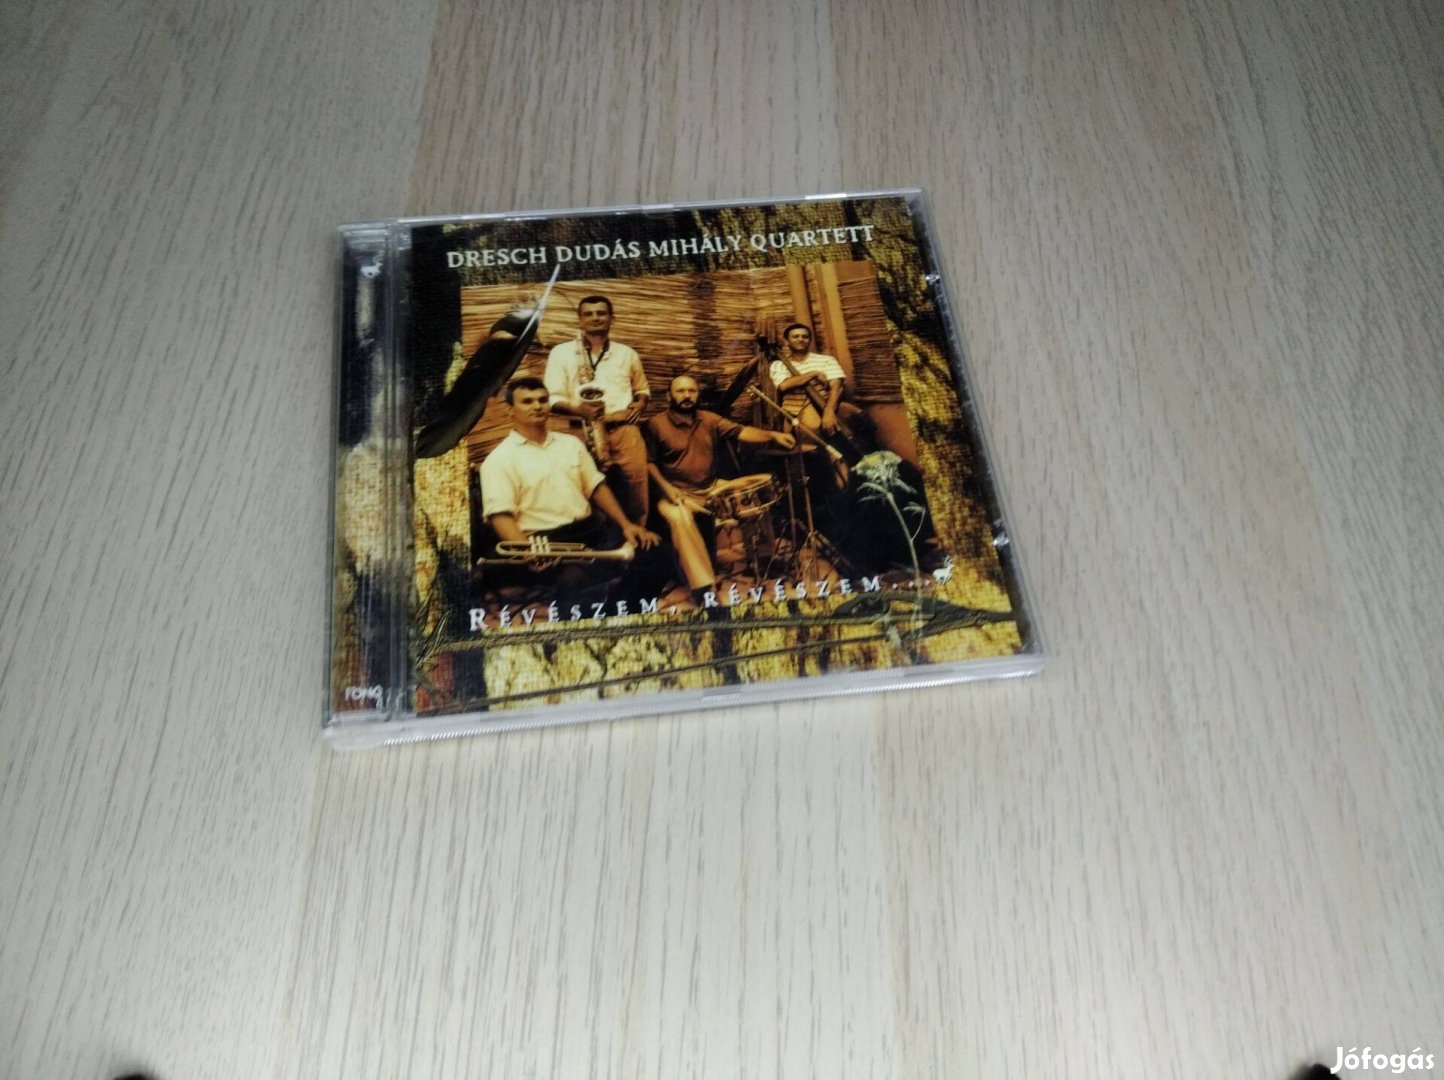 Dresch Dudás Mihály Quartett - Révészem, Révészem. / CD